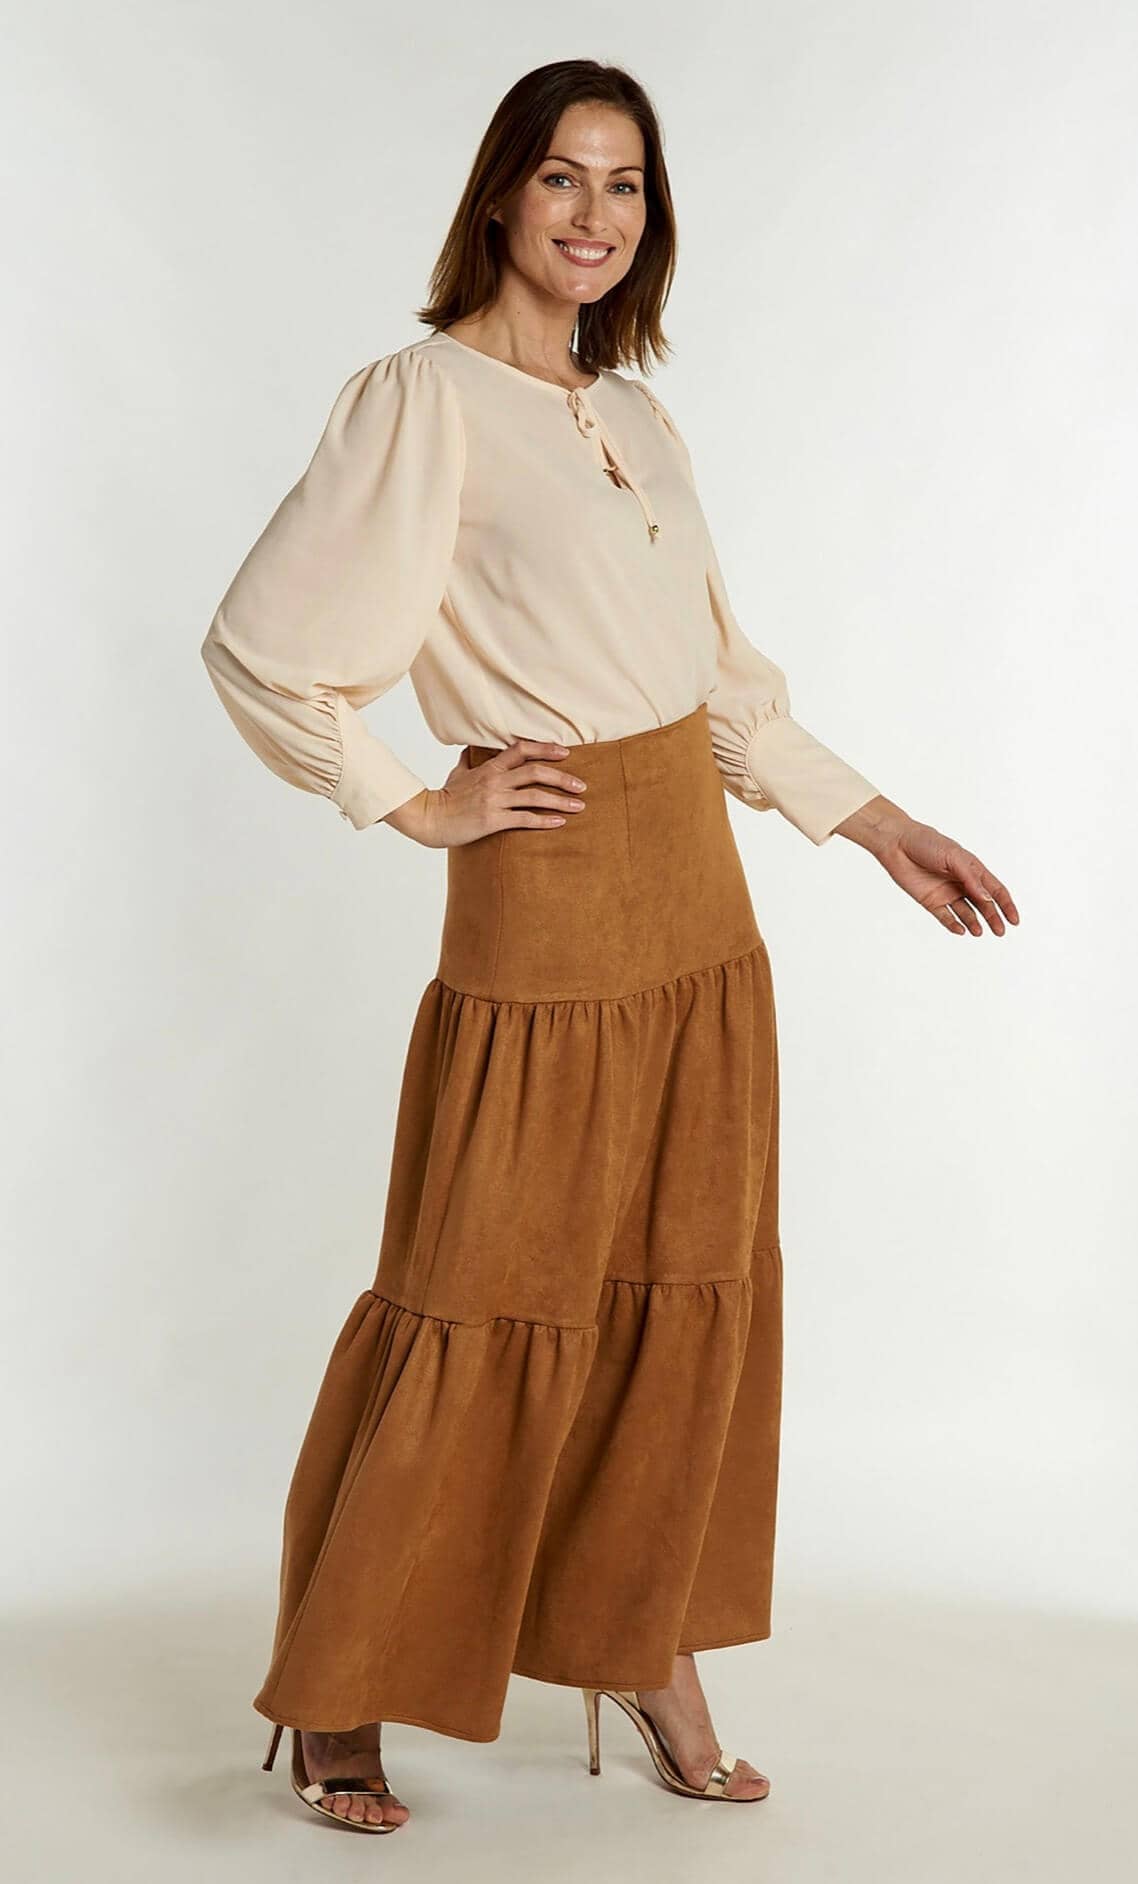 CK Bradley Samana Skirt in Cinnamon microsuede